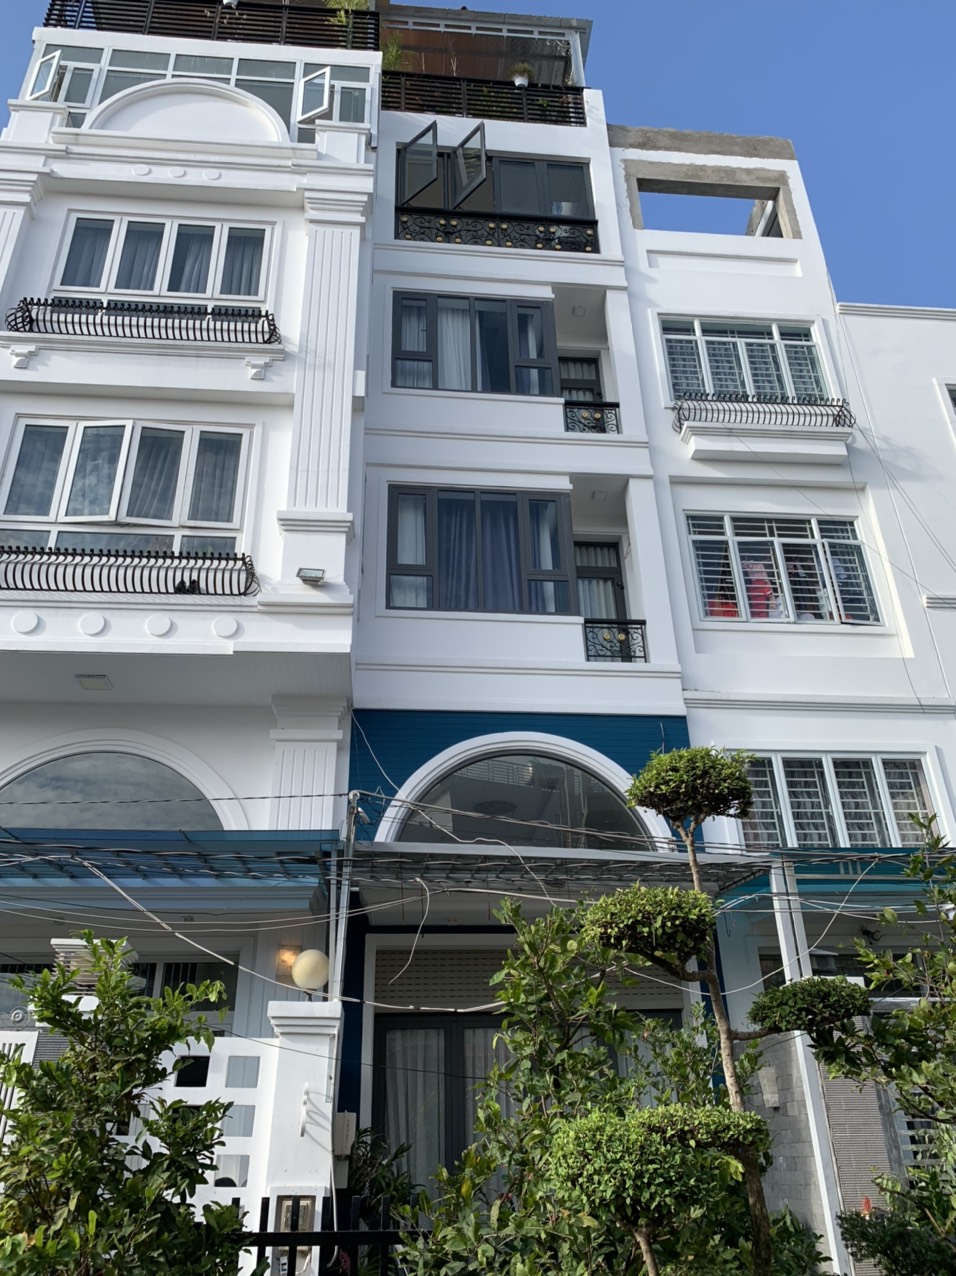 Bán nhà cho thuê căn hộ DV đường Nguyễn Khoái 6 tầng 56m2, Giá 7,3 tỷ